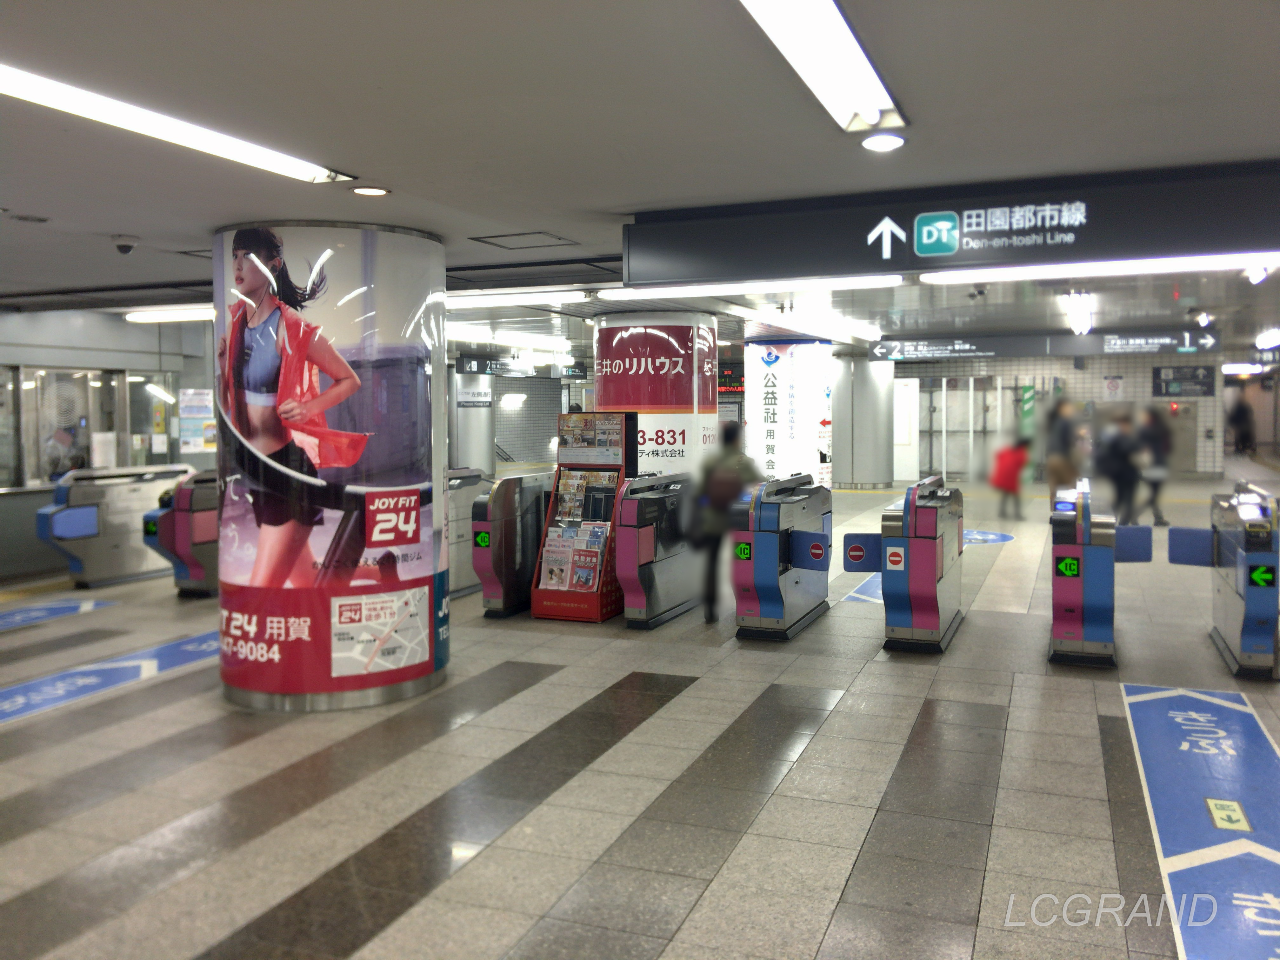 ビジネススクエアにも繋がっている用賀駅の改札口。